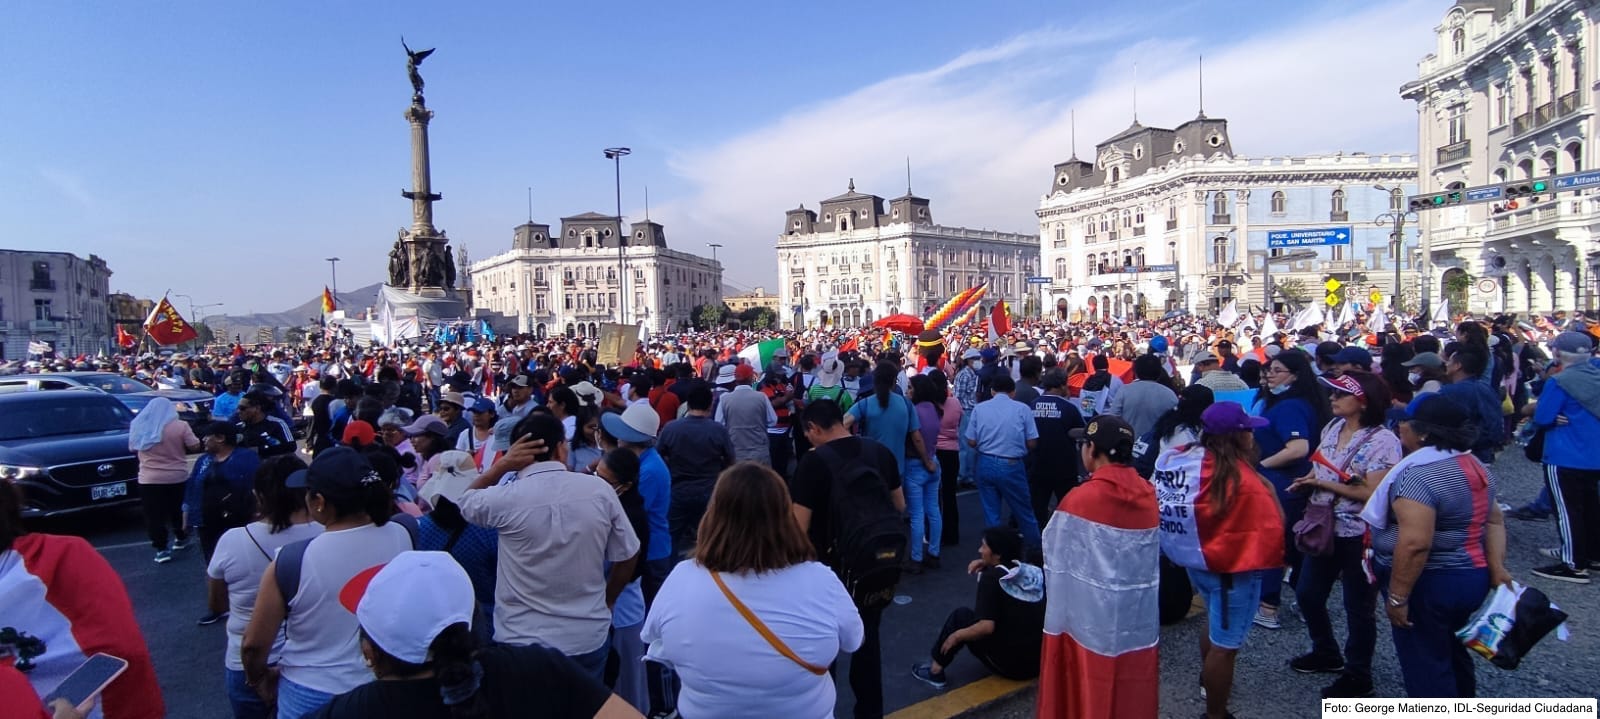 Krise in Peru: Diskussion zur aktuellen Lage der Menschenrechte und Demokratie